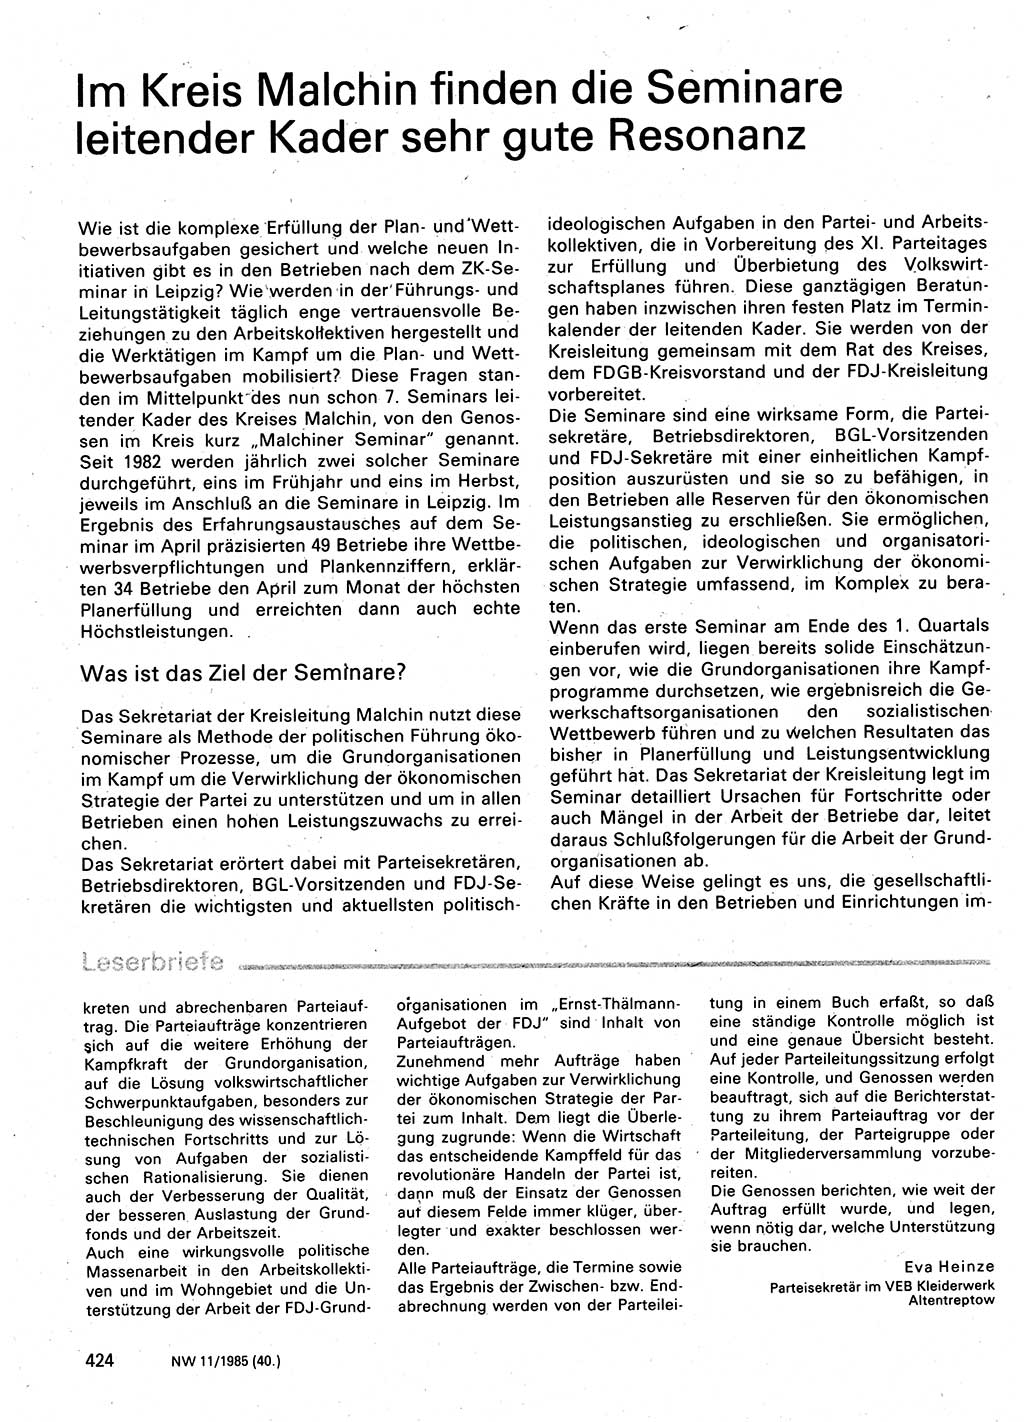 Neuer Weg (NW), Organ des Zentralkomitees (ZK) der SED (Sozialistische Einheitspartei Deutschlands) für Fragen des Parteilebens, 40. Jahrgang [Deutsche Demokratische Republik (DDR)] 1985, Seite 424 (NW ZK SED DDR 1985, S. 424)